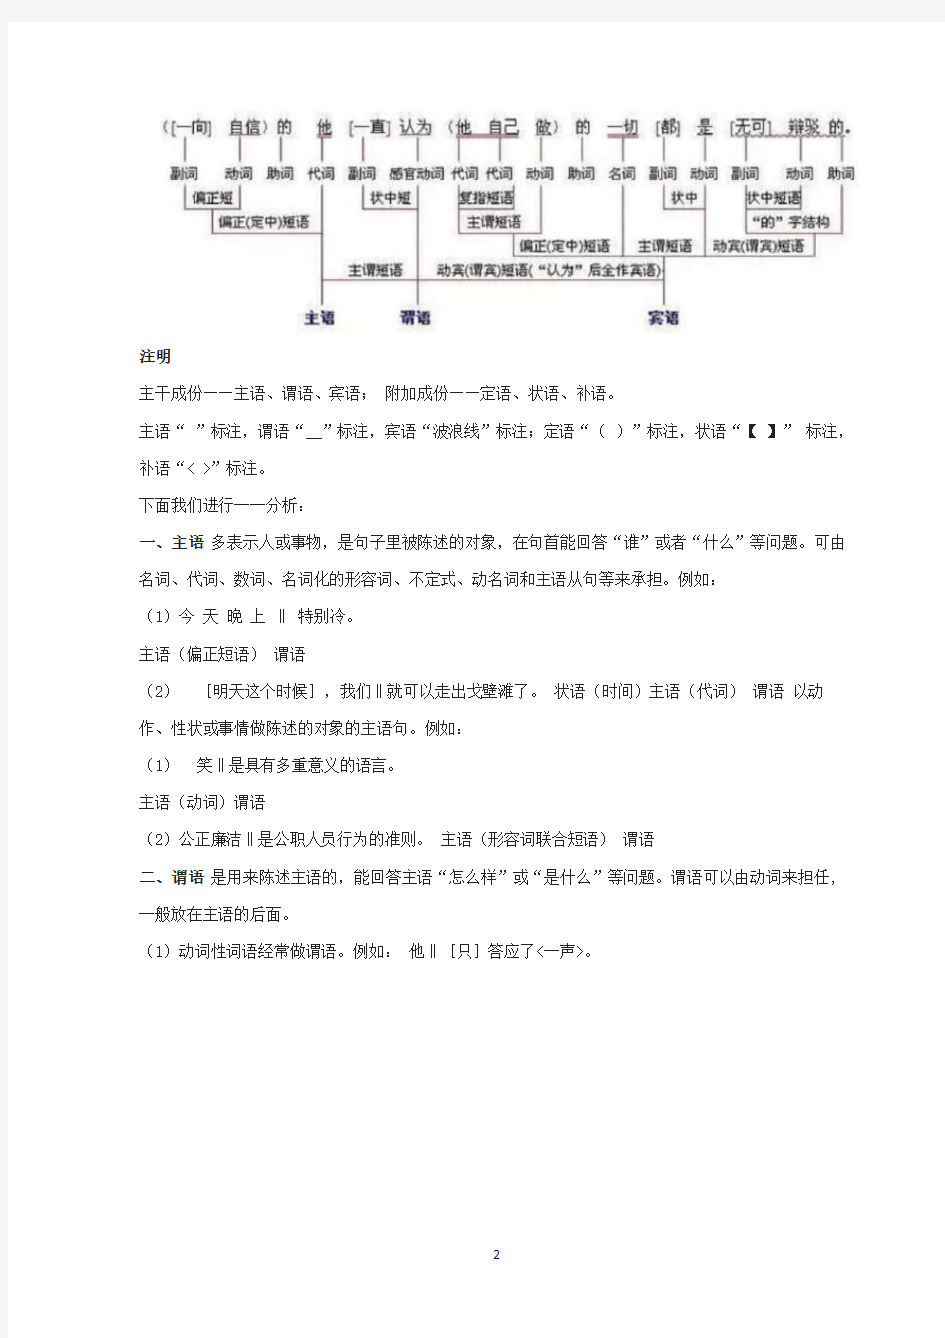 初中语文句子成分分析,三图教你看懂句子结构